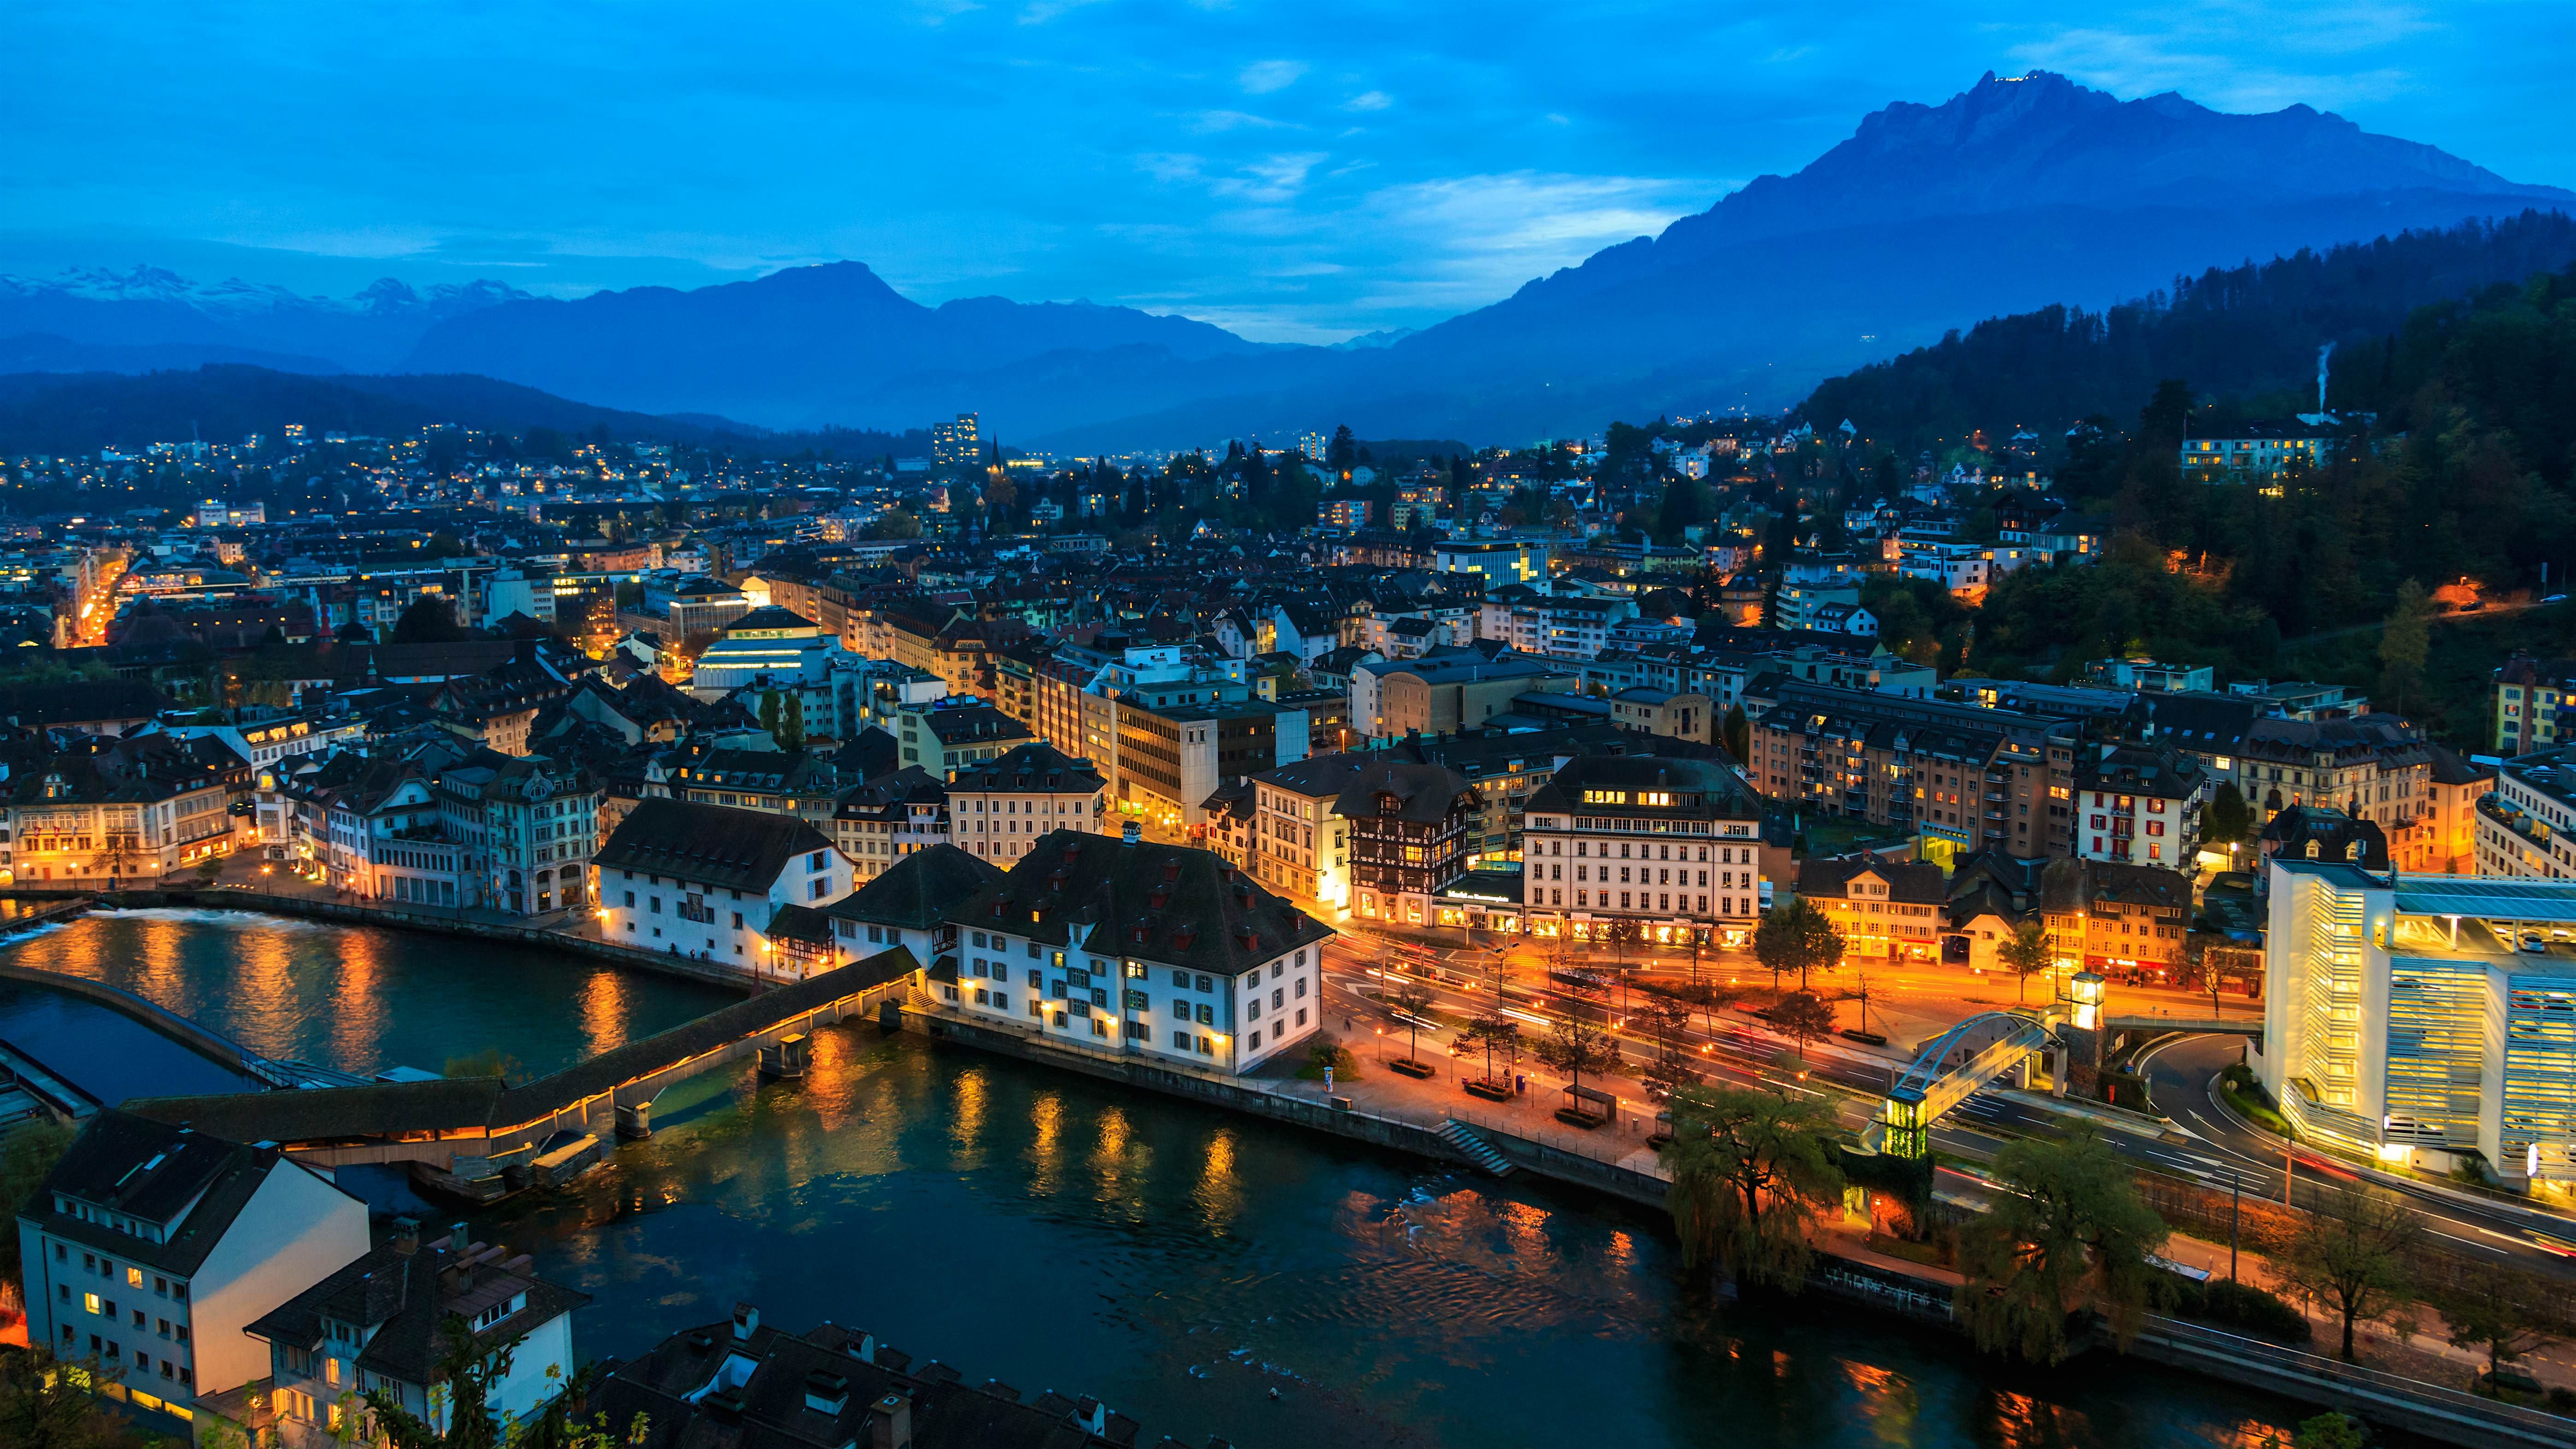 Lucerne travel | Central Switzerland, Switzerland - Lonely Planet